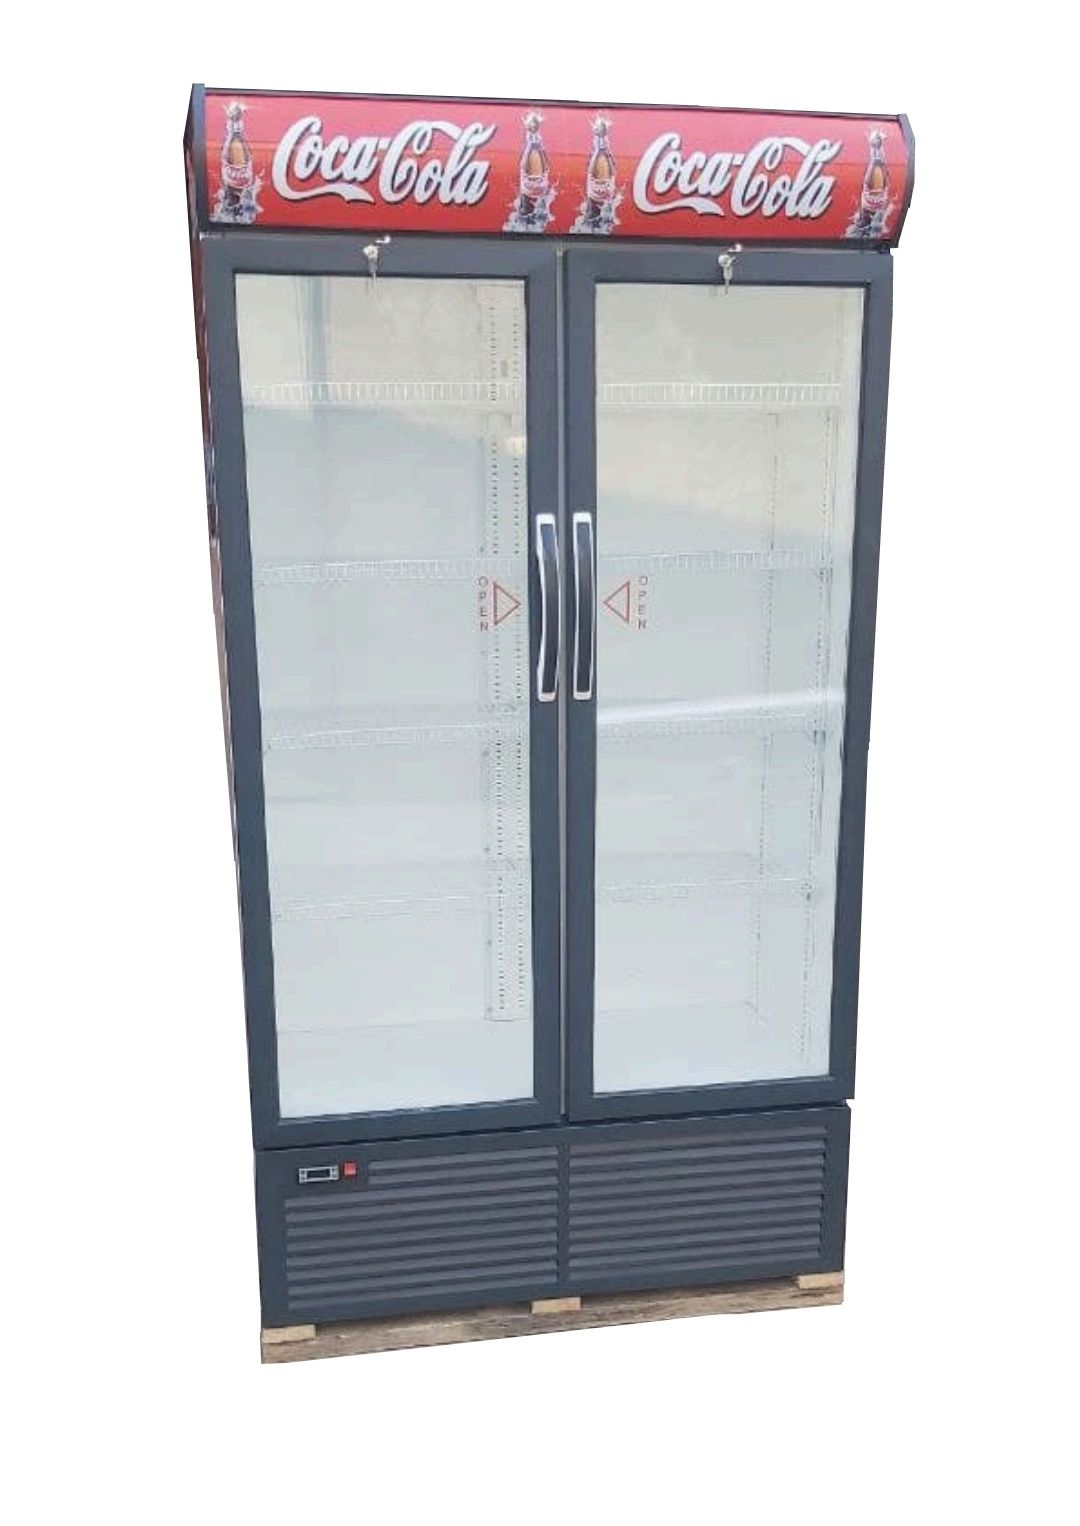 Новые DEVI HS930 витринные холодильники.